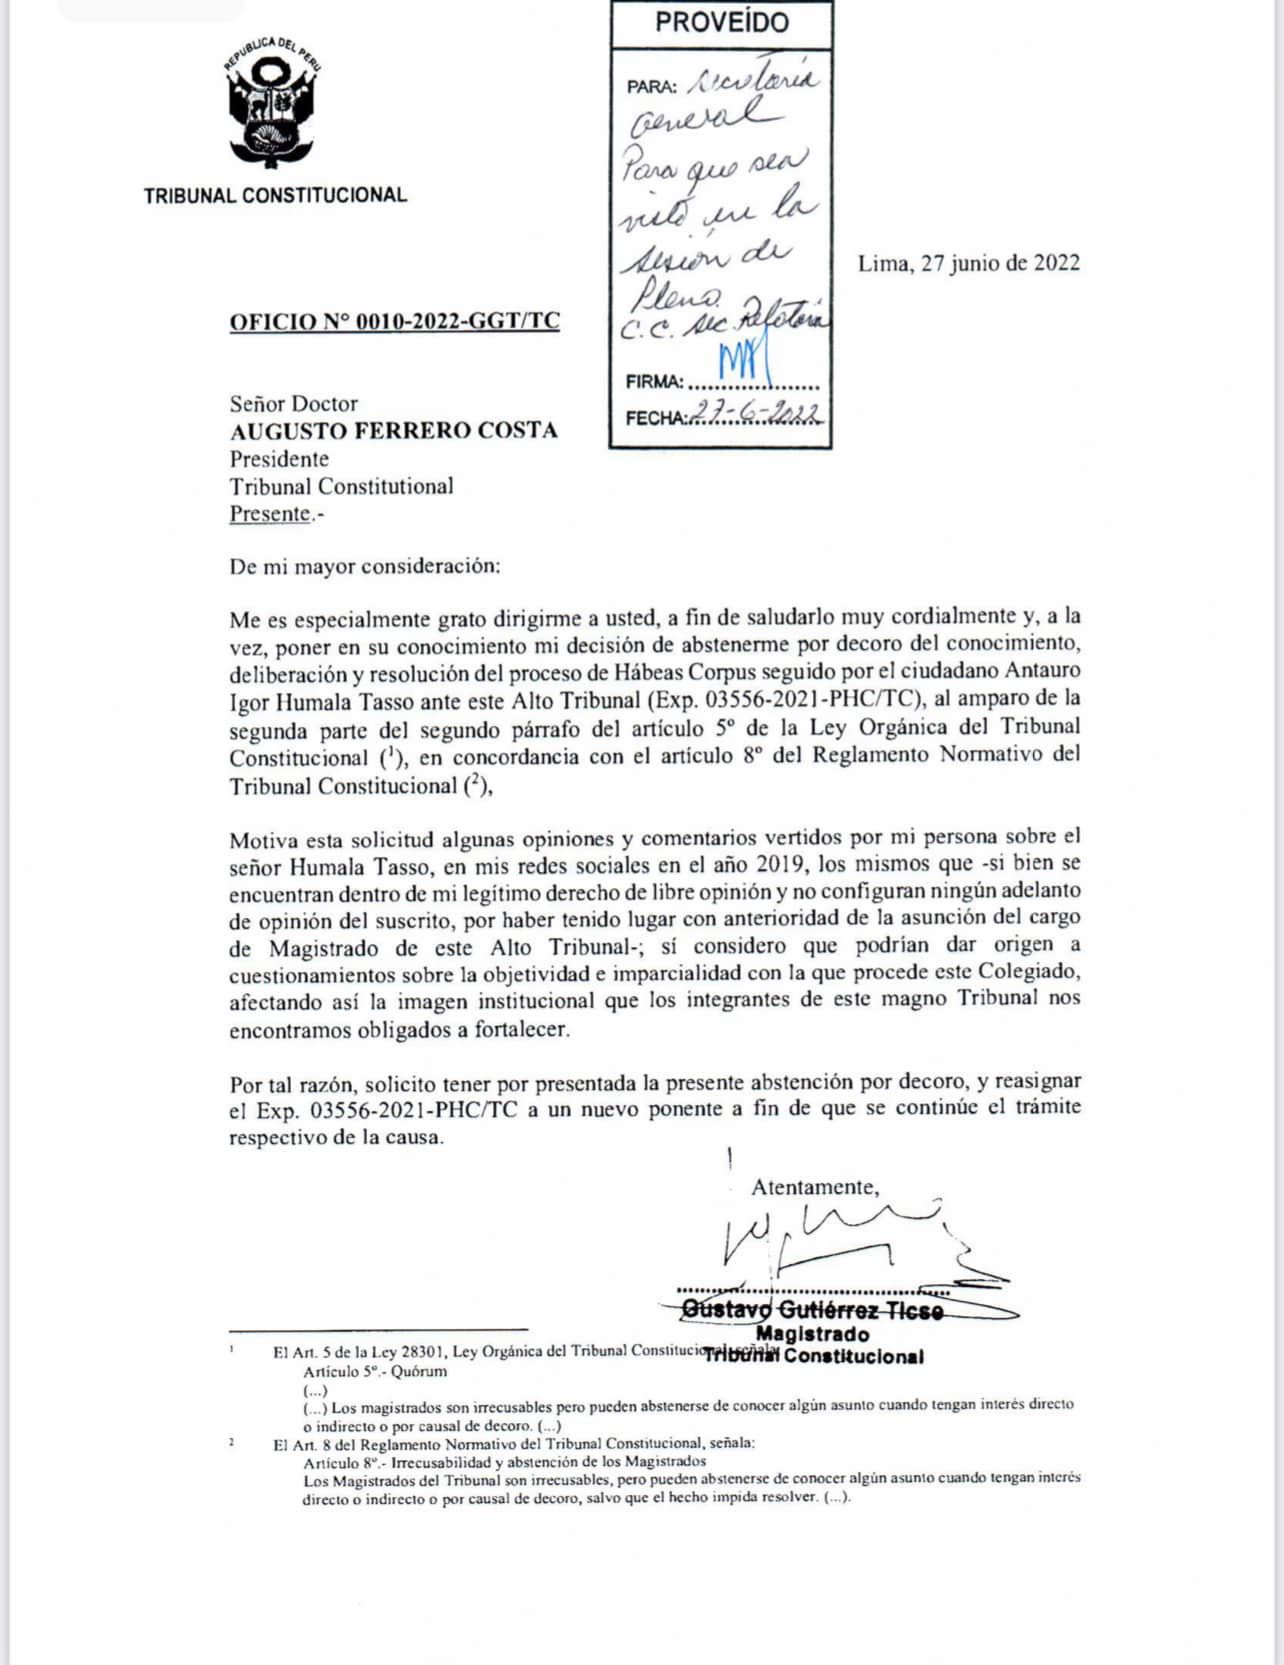 Documento del pedido del magistrado Luis Gutiérrez Ticse para apartarse el caso Antauro Humala.